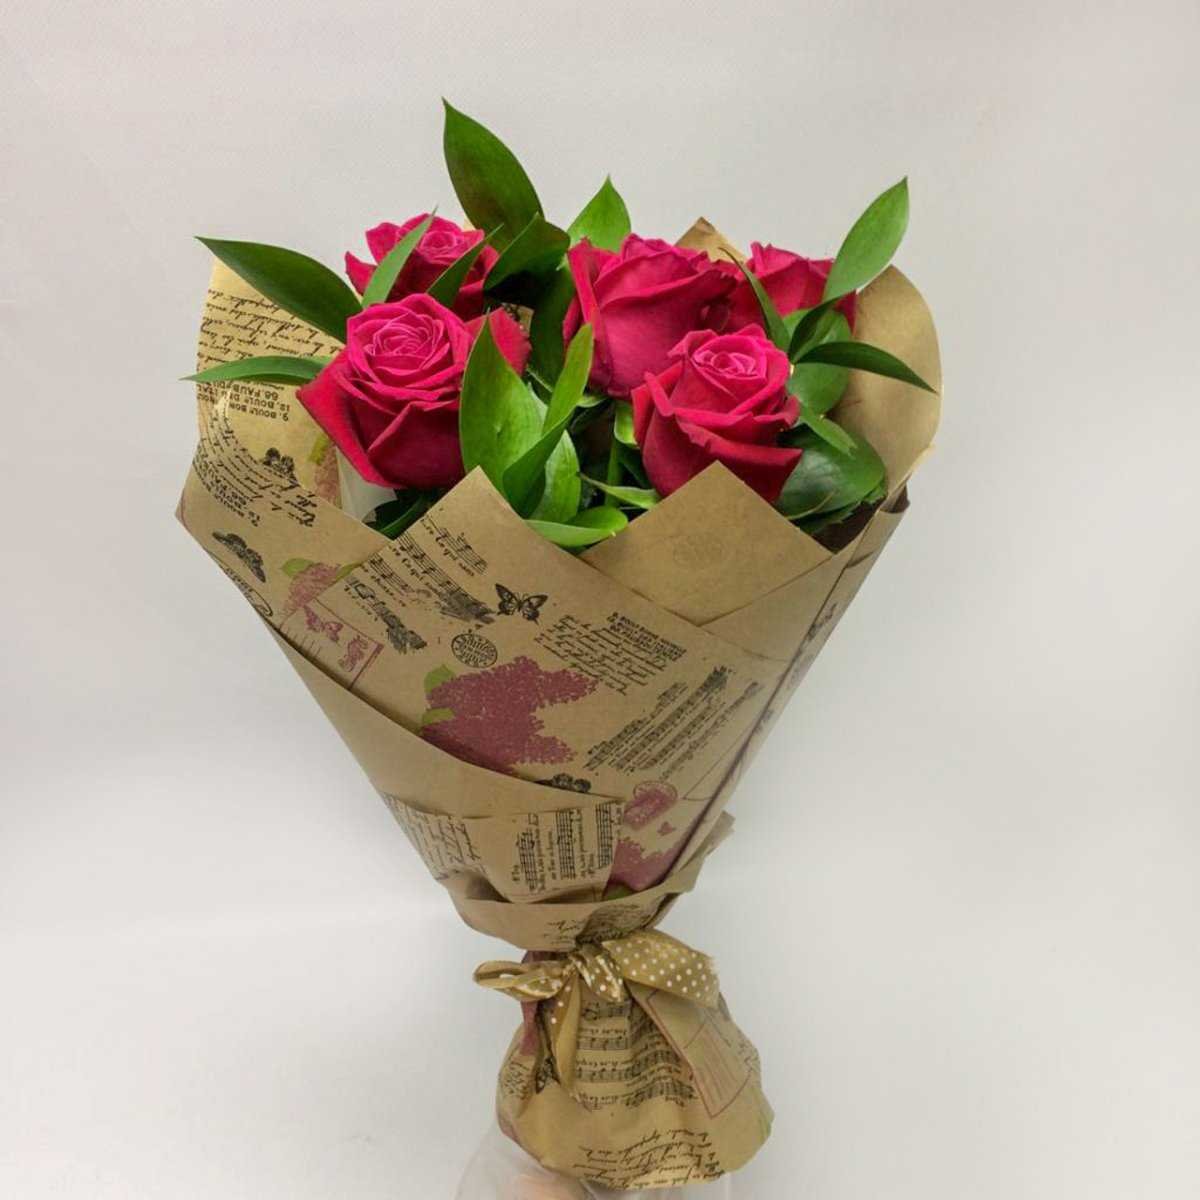 Как красиво завернуть цветы в бумагу. Букет роз в крафтовой бумаге. Упаковка для цветов. Упаковка цветов в бумагу. Красивая упаковка букета.